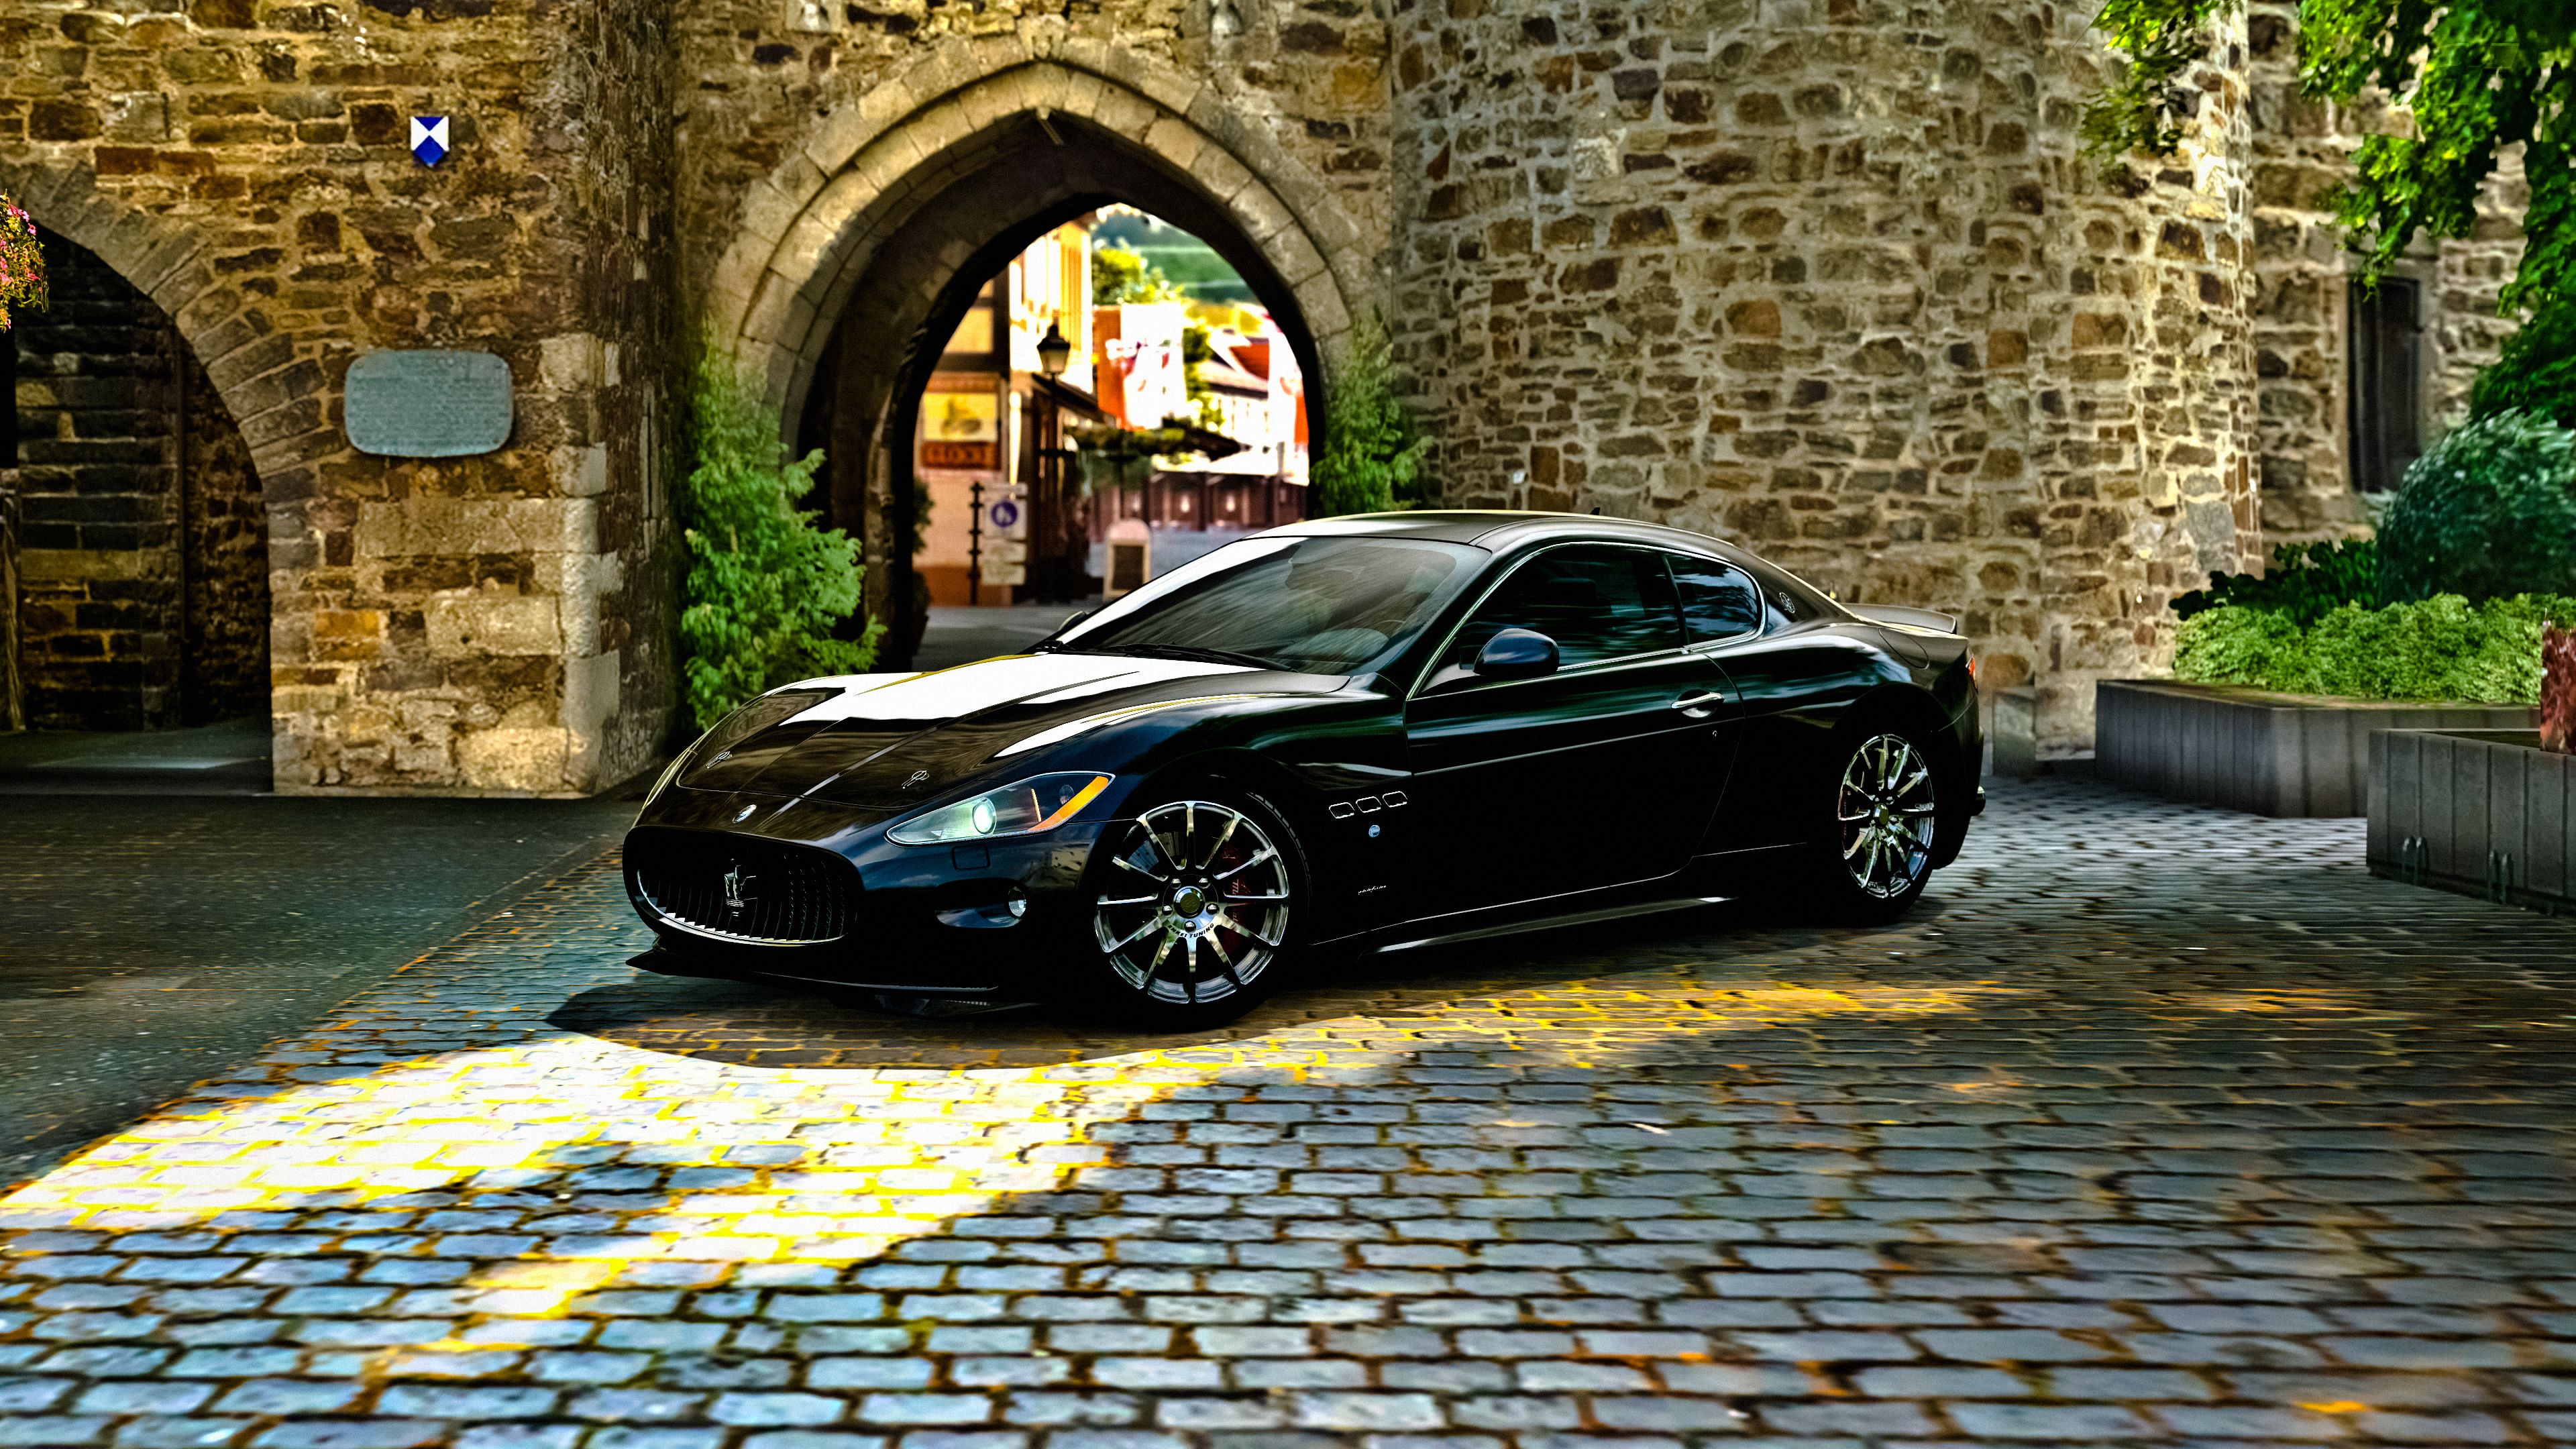 Maserati HD Wallpaper and Background Image